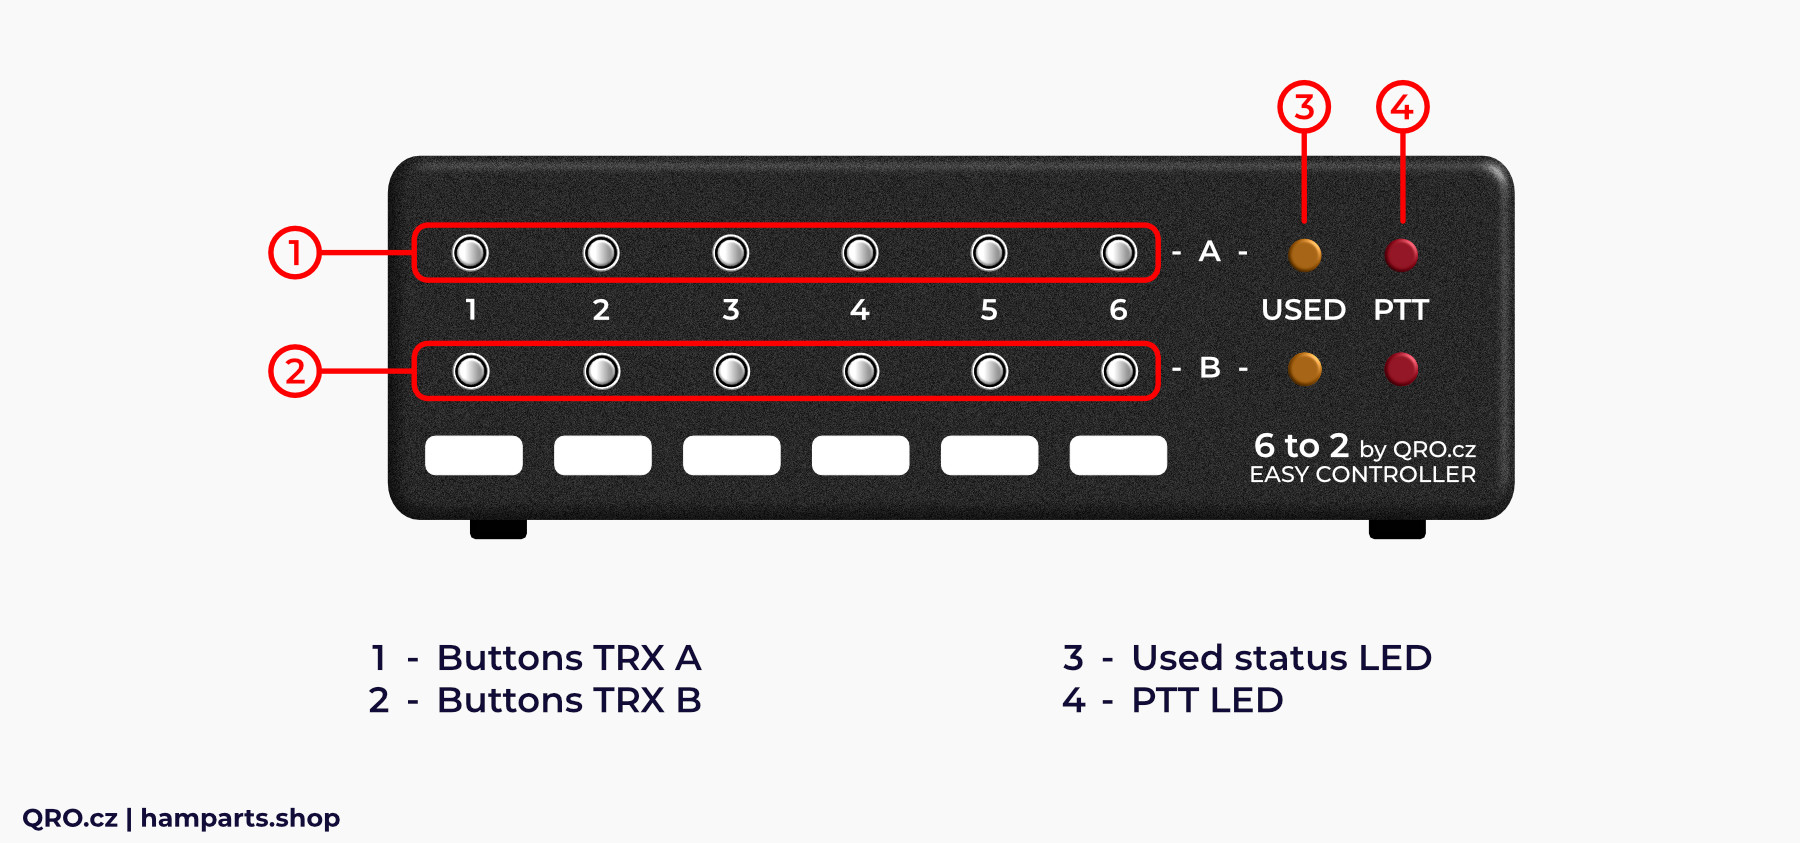 6-2 easy controller description front panel qro.cz hamparts.shop